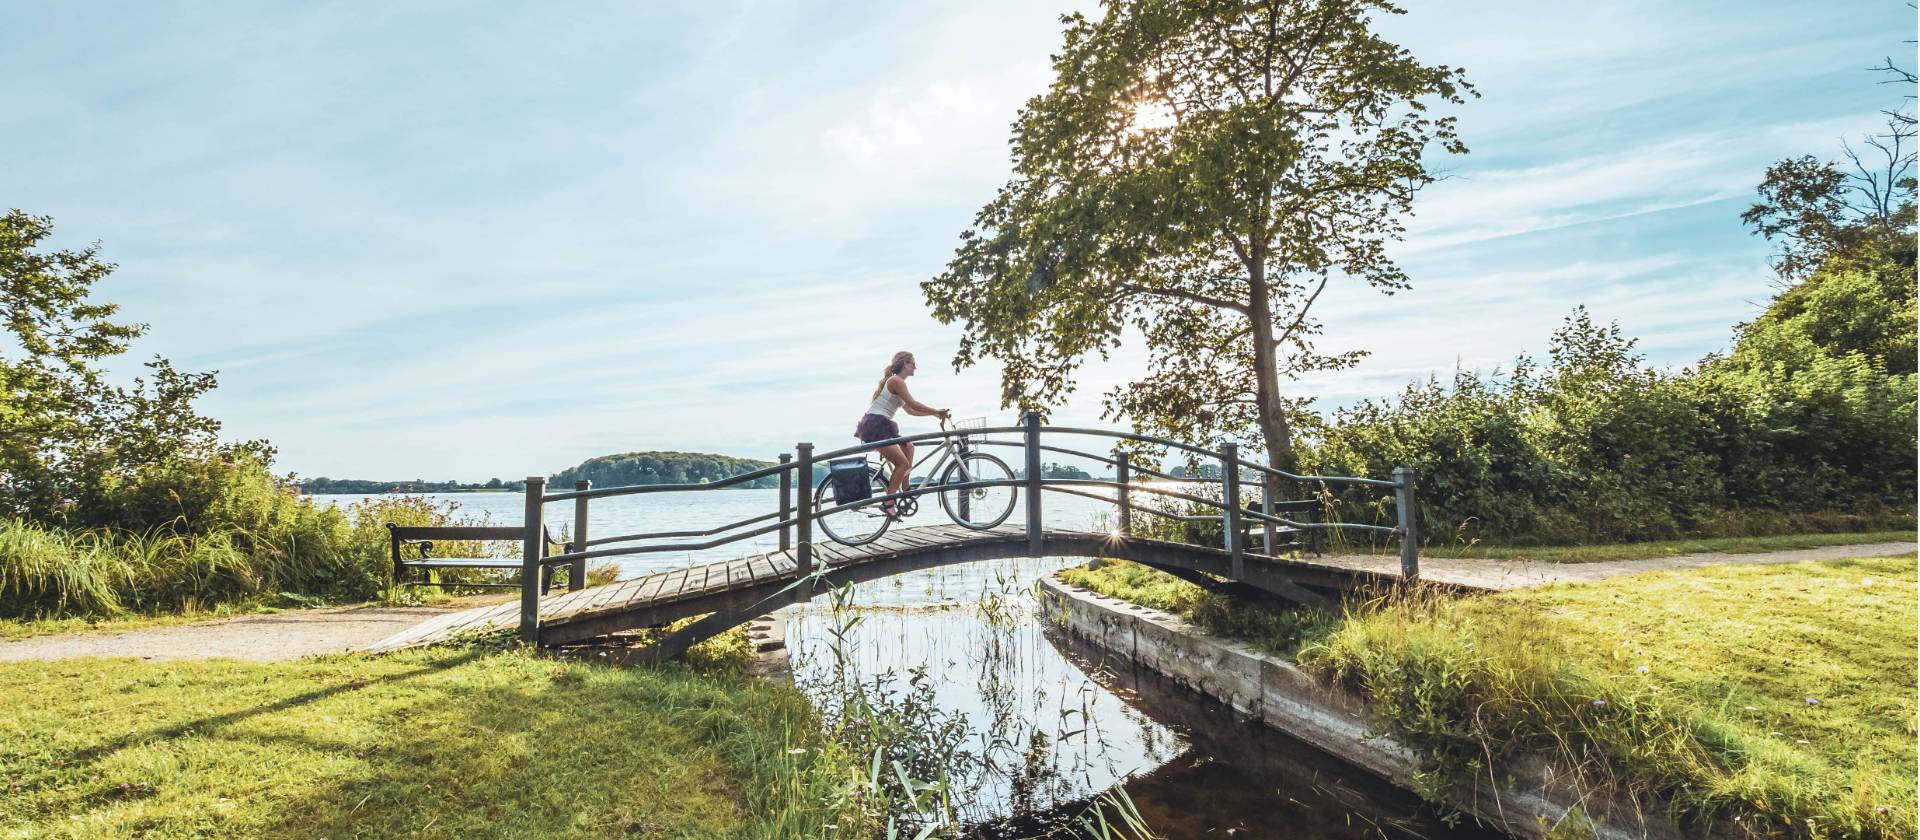 Woman cycling on a scenic wooden bridge in Denmark. | Daniel Villadsen